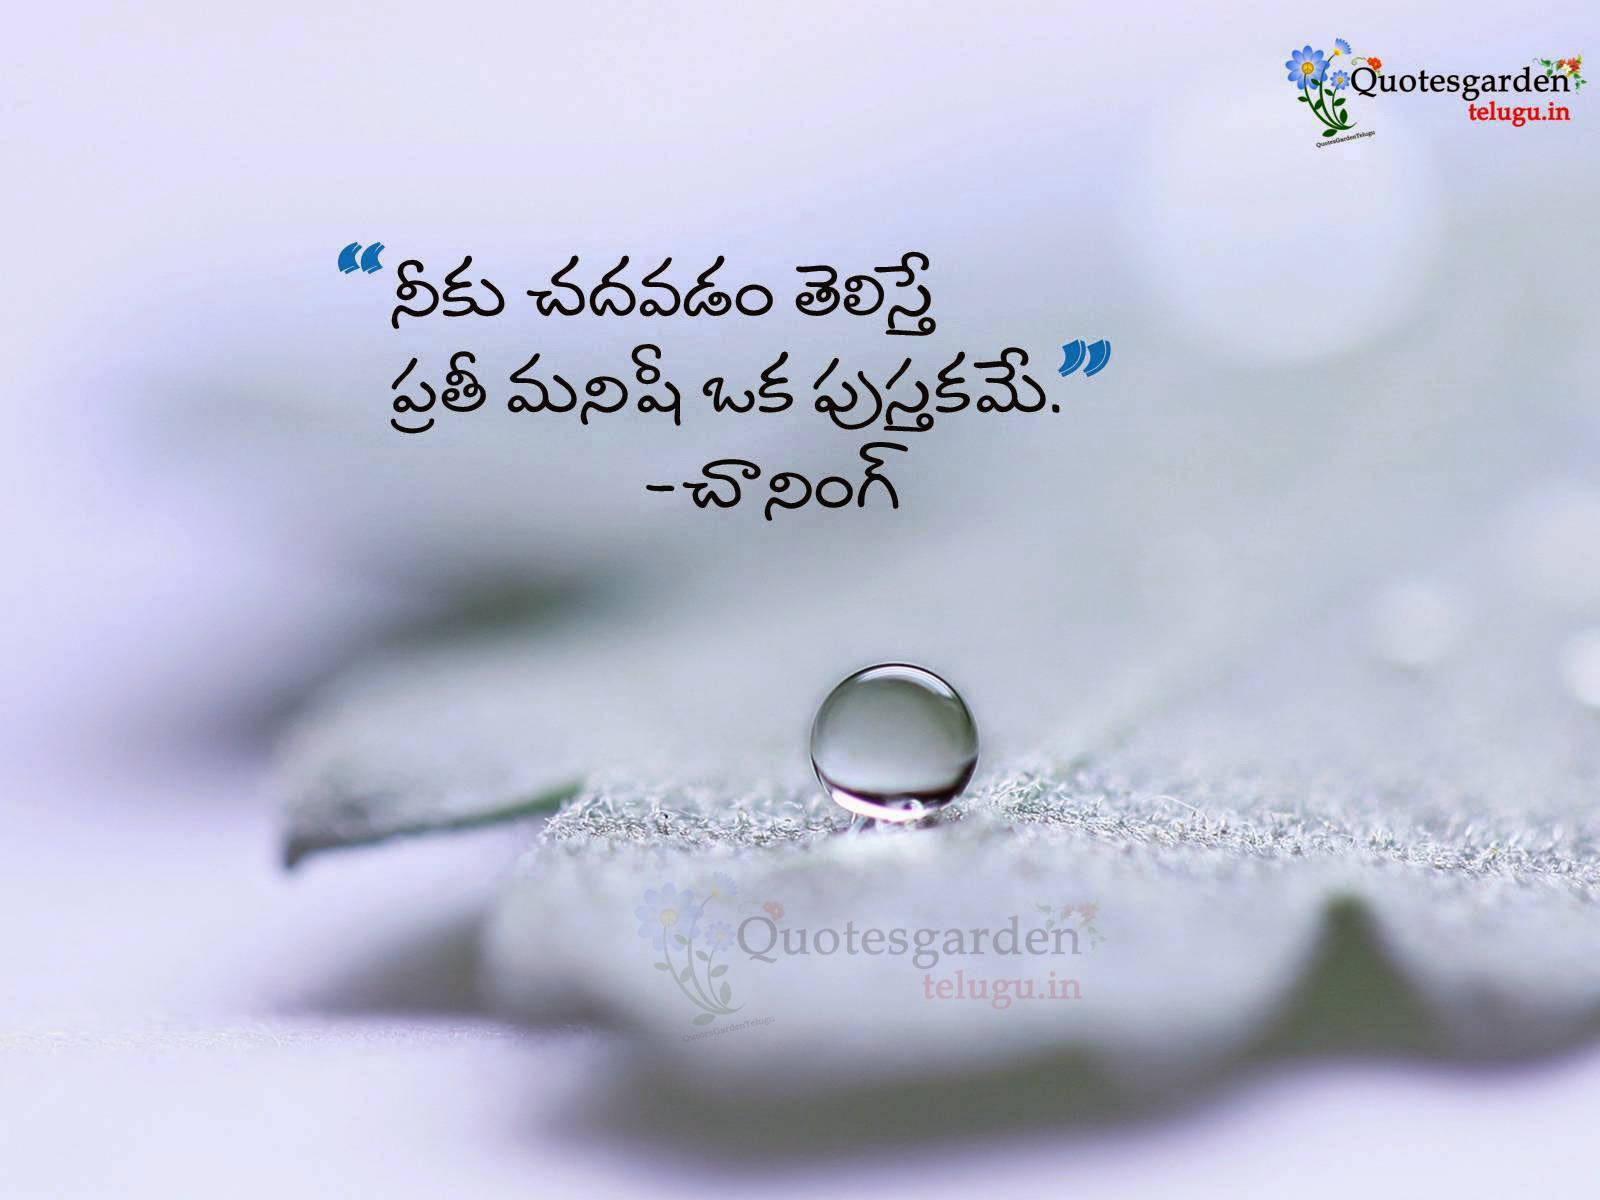 Best Telugu Inspirational Quotes Top Telugu Quotes Nice Telugu Quotes Famous Telugu Quotes